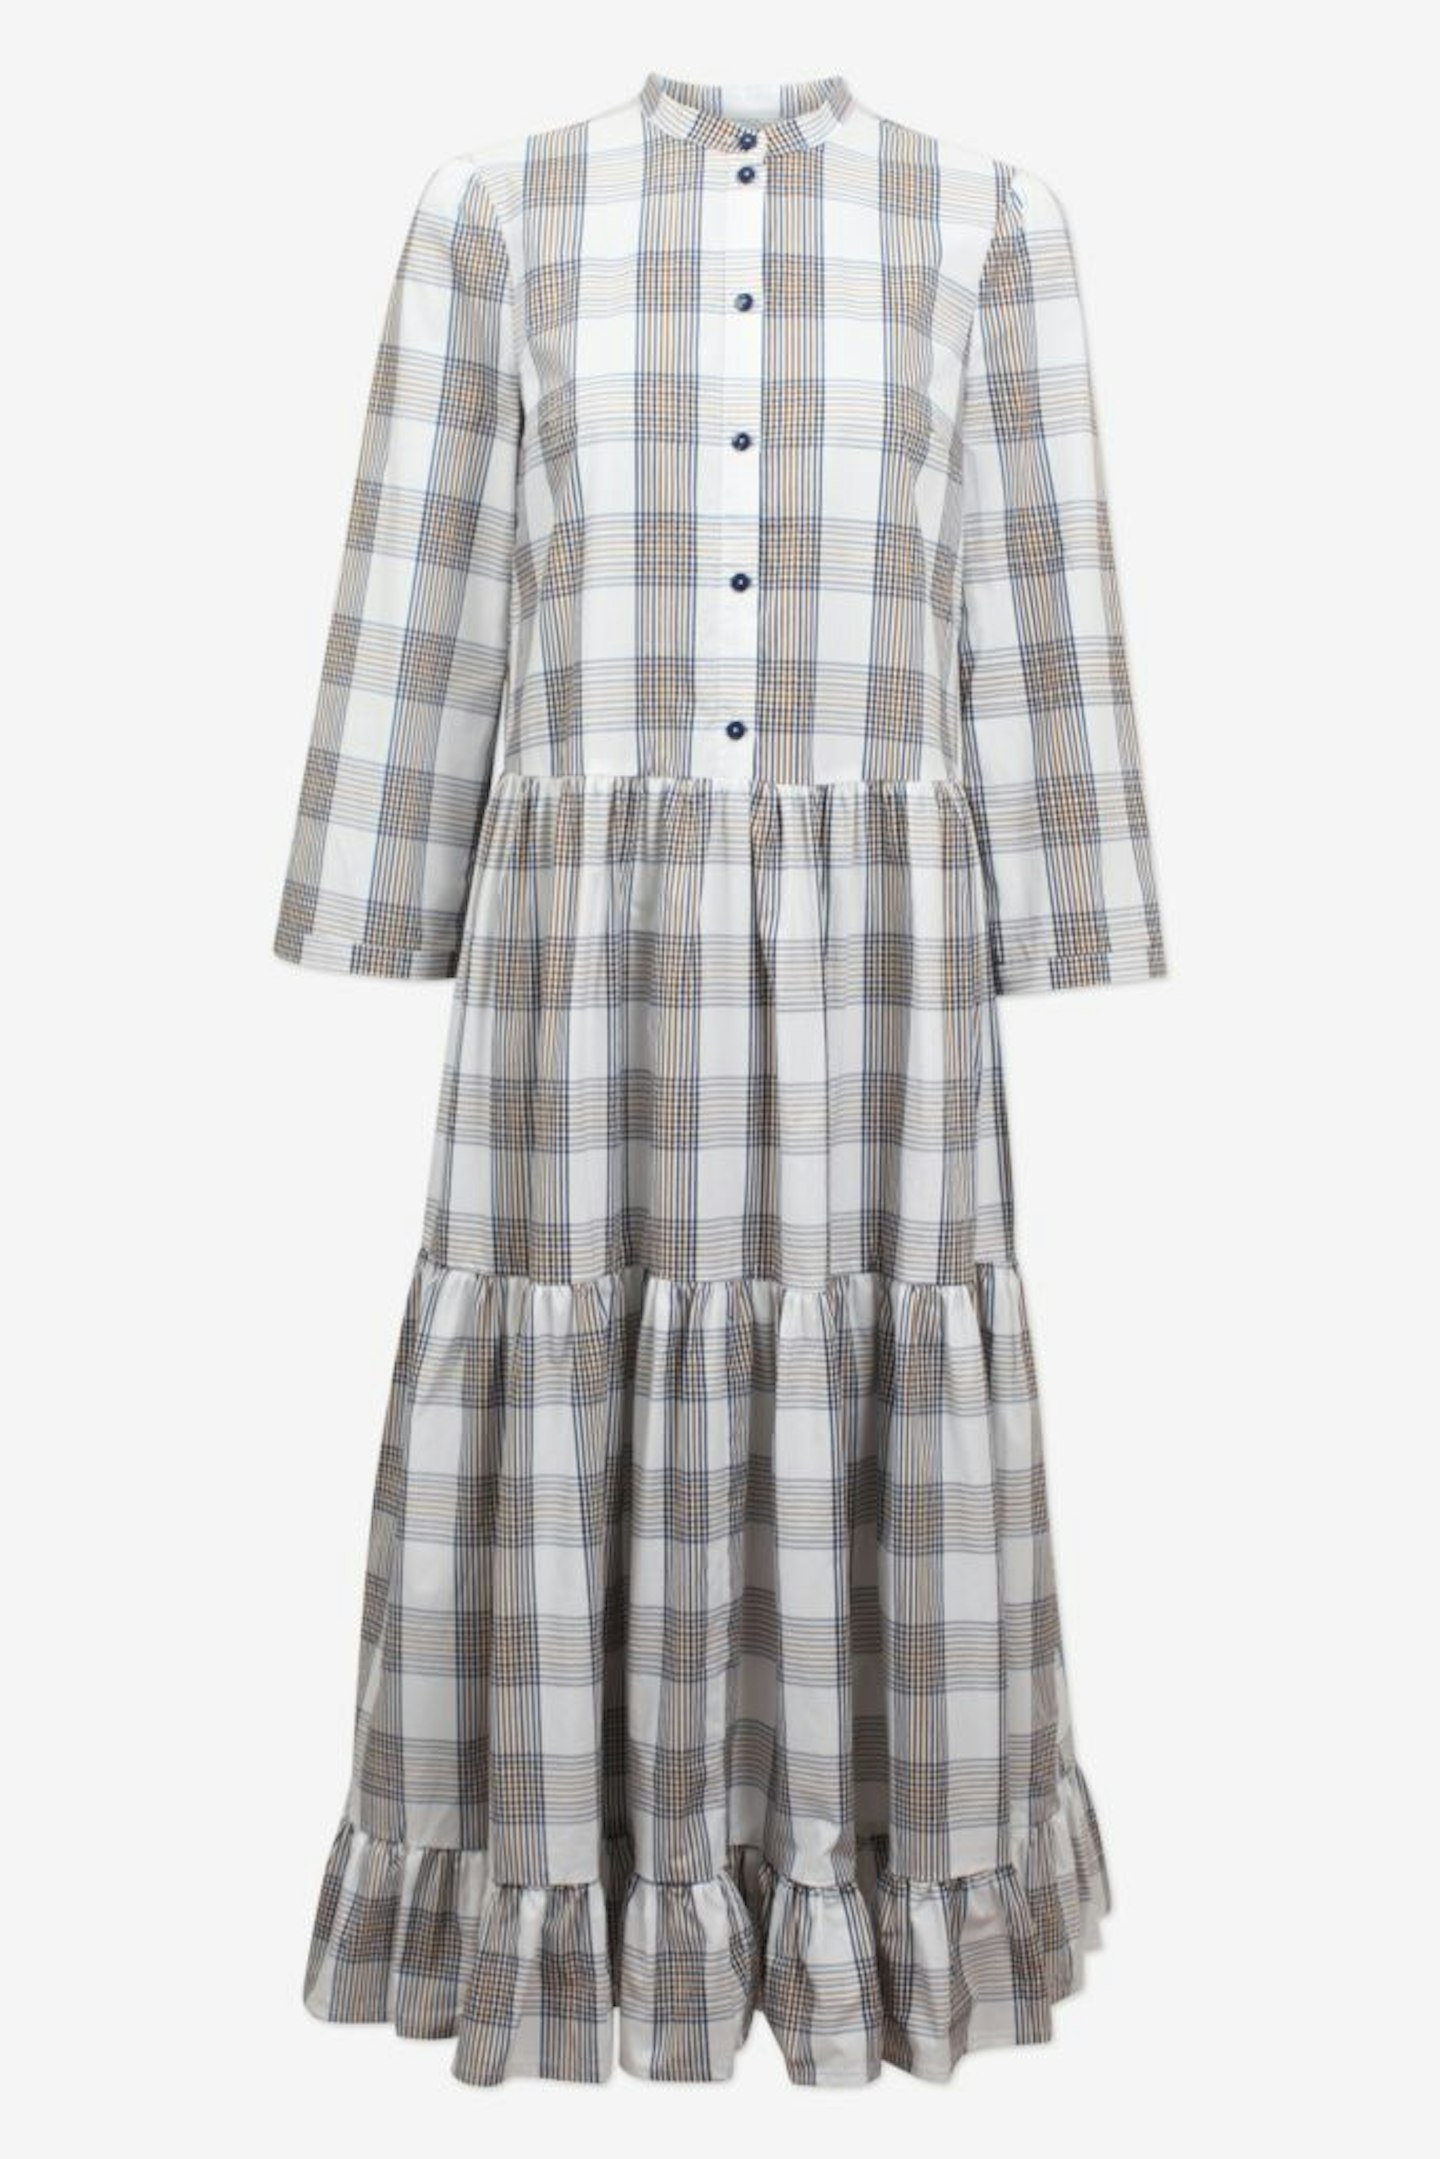 Baum Und Pferdgarten, Organic Cotton Check Dress, £249